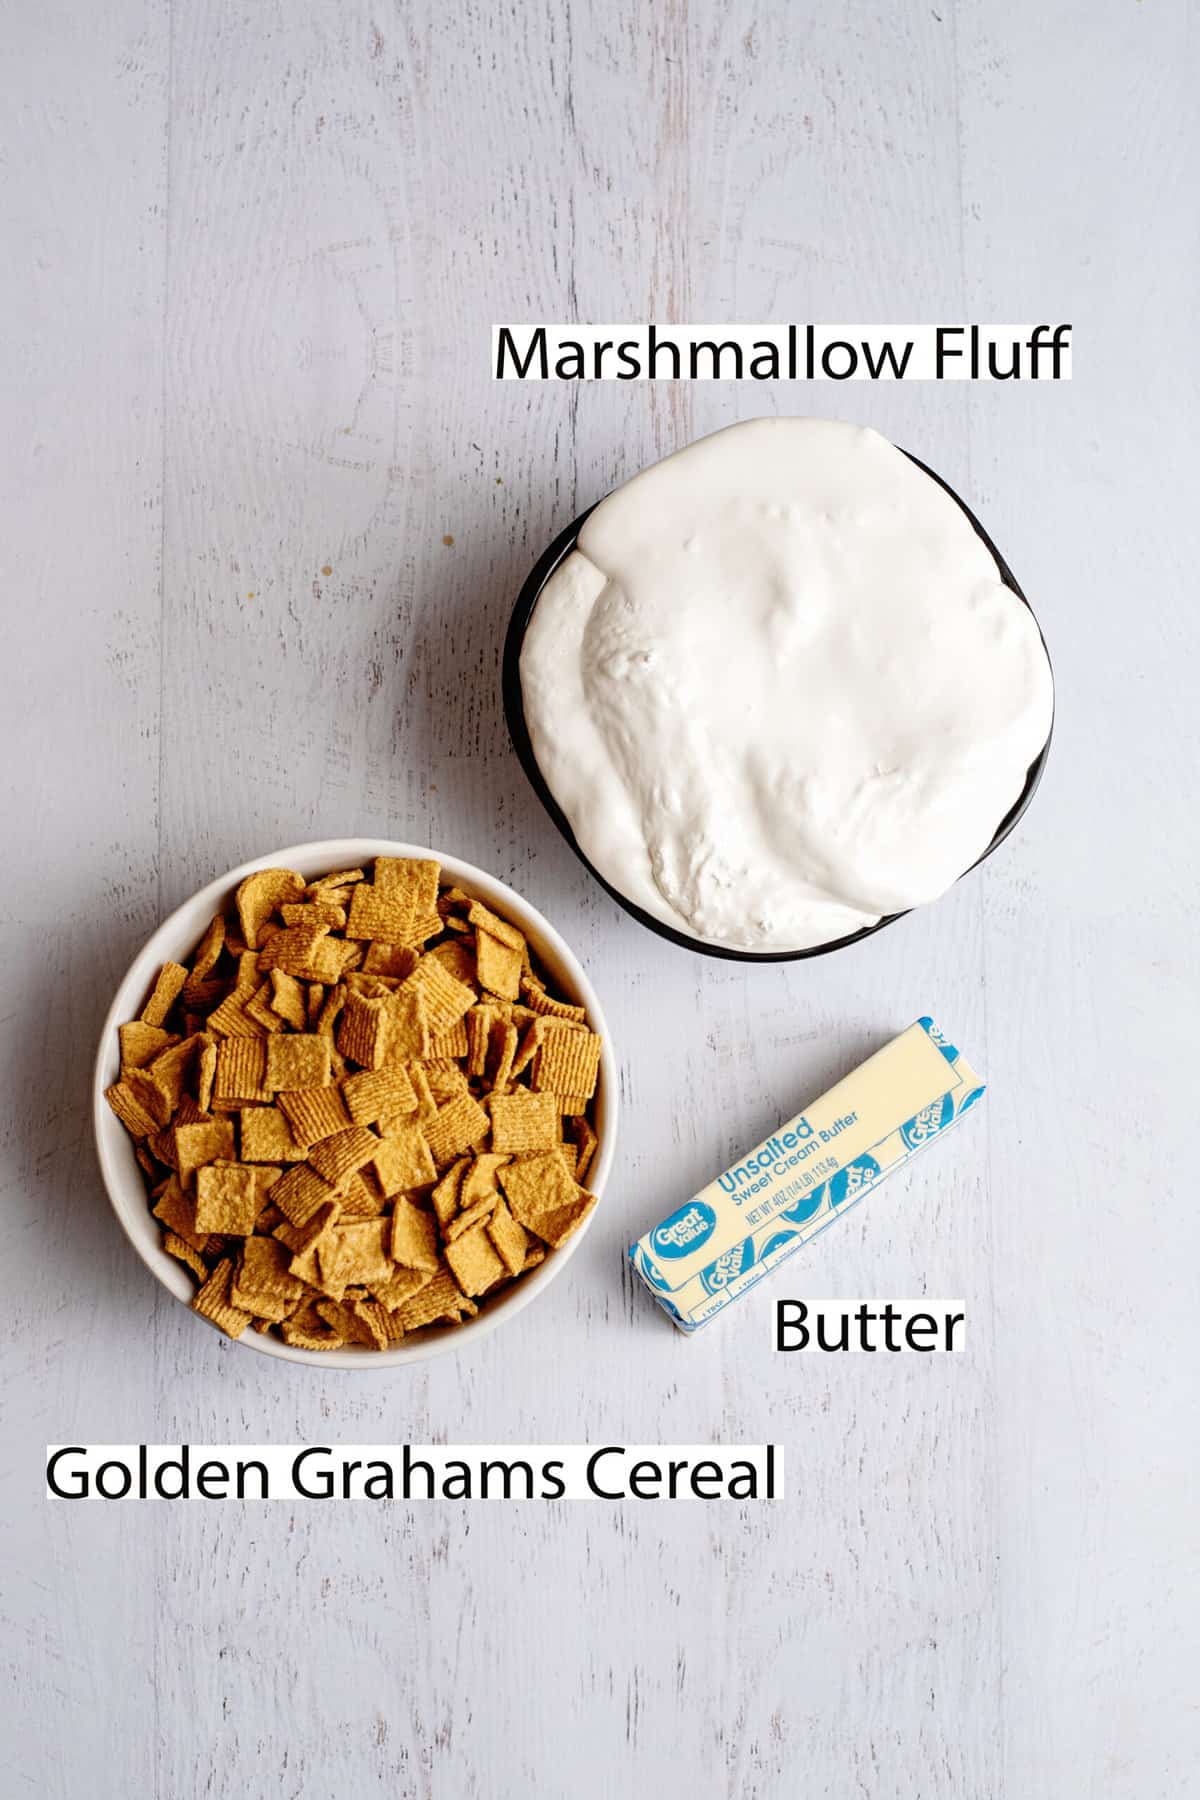 ingredients for Golden Grahams treats